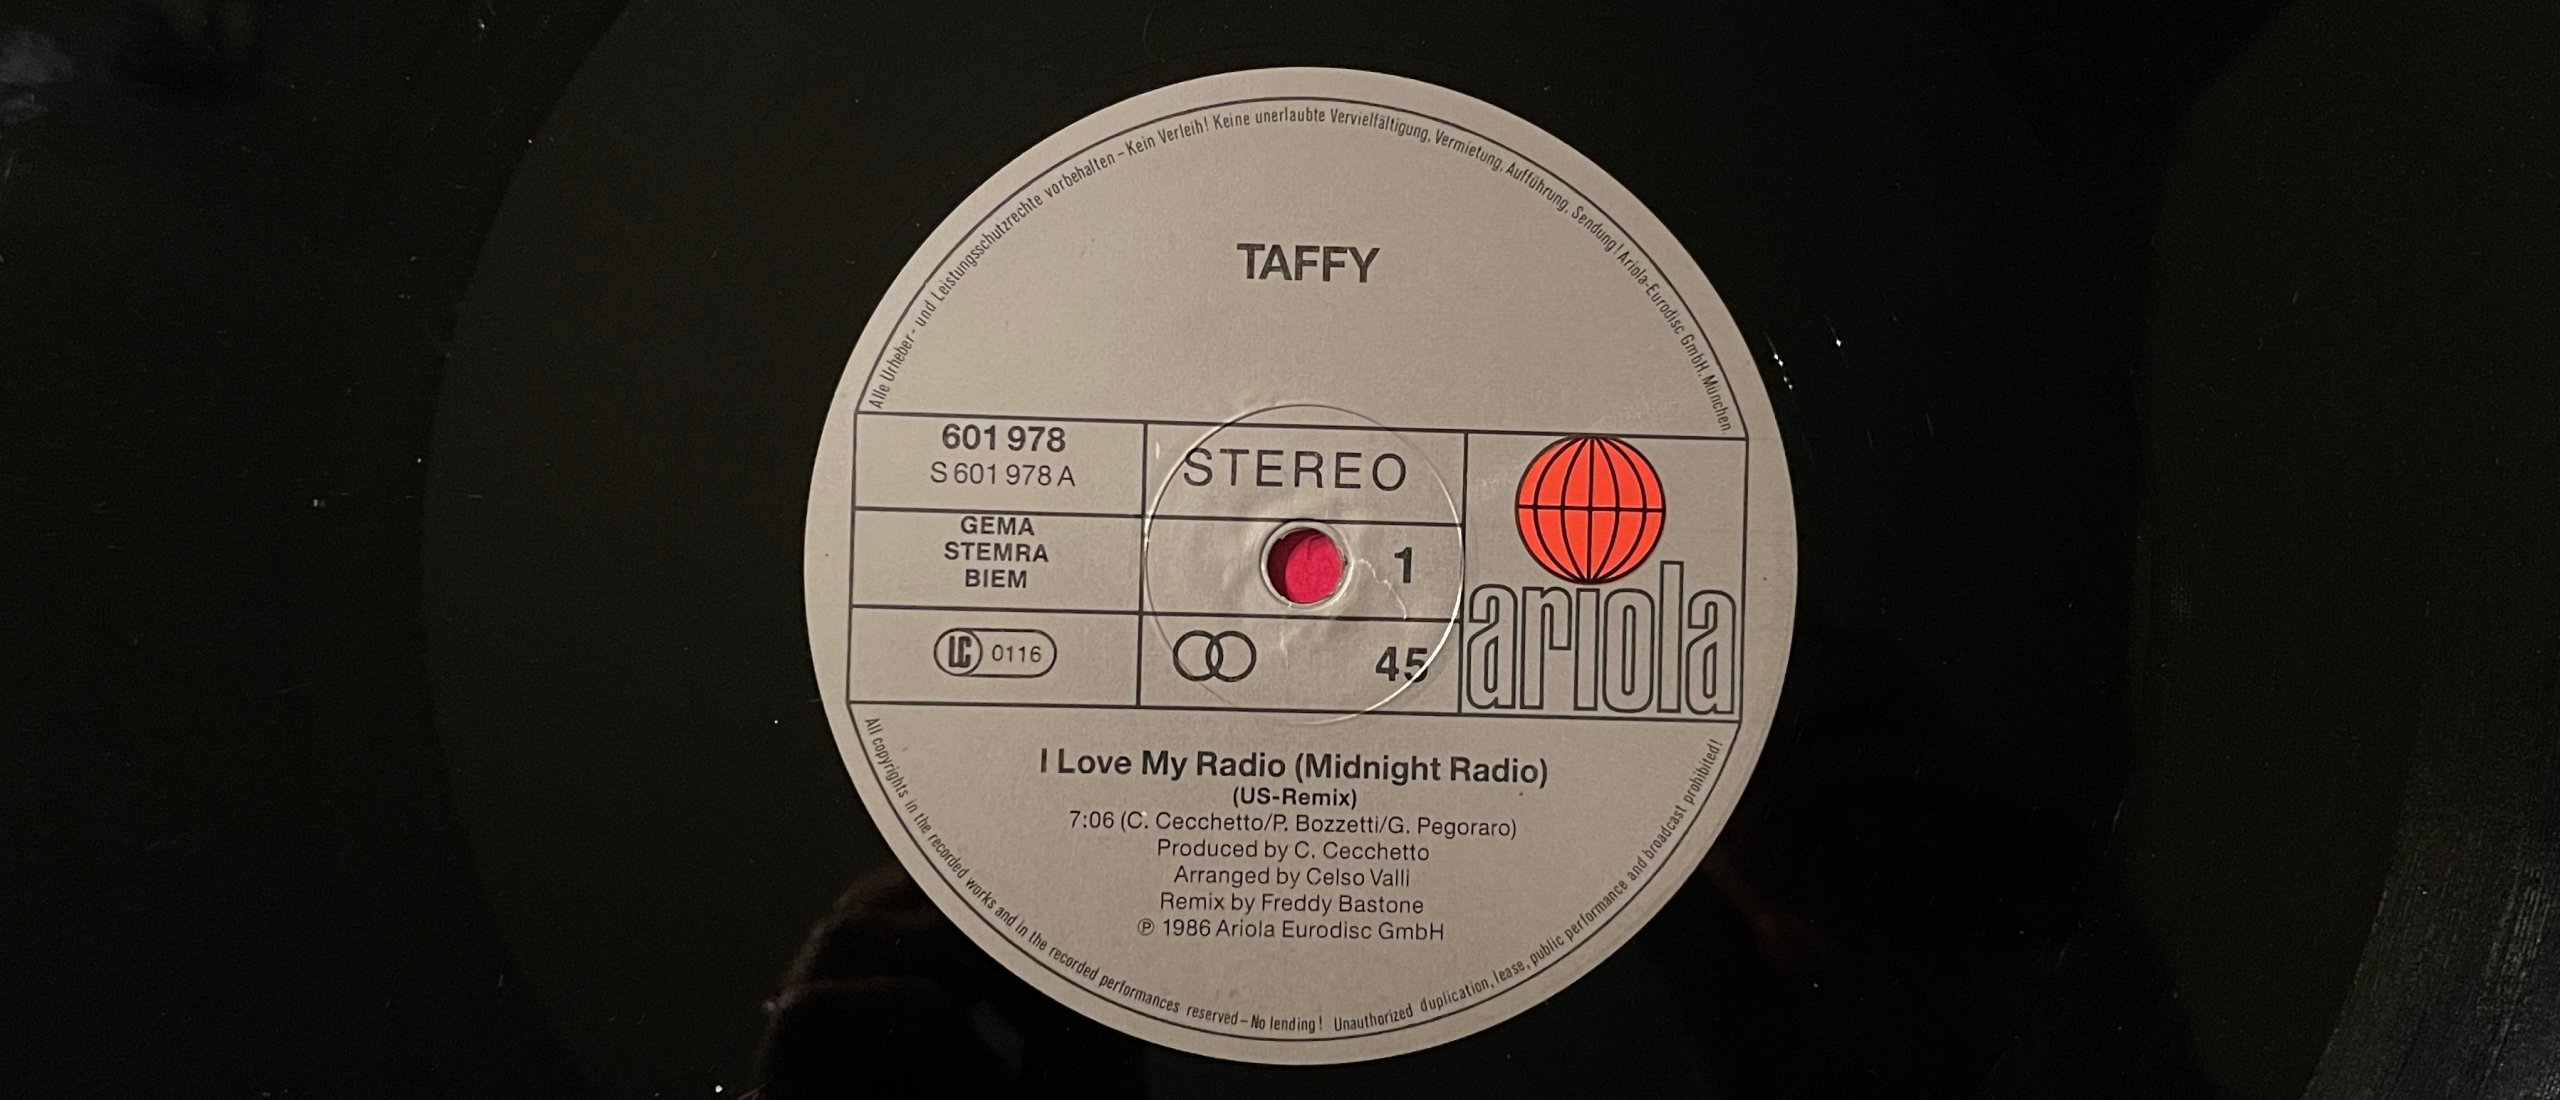 Forgotten Song Friday Taffy met I Love My Radio